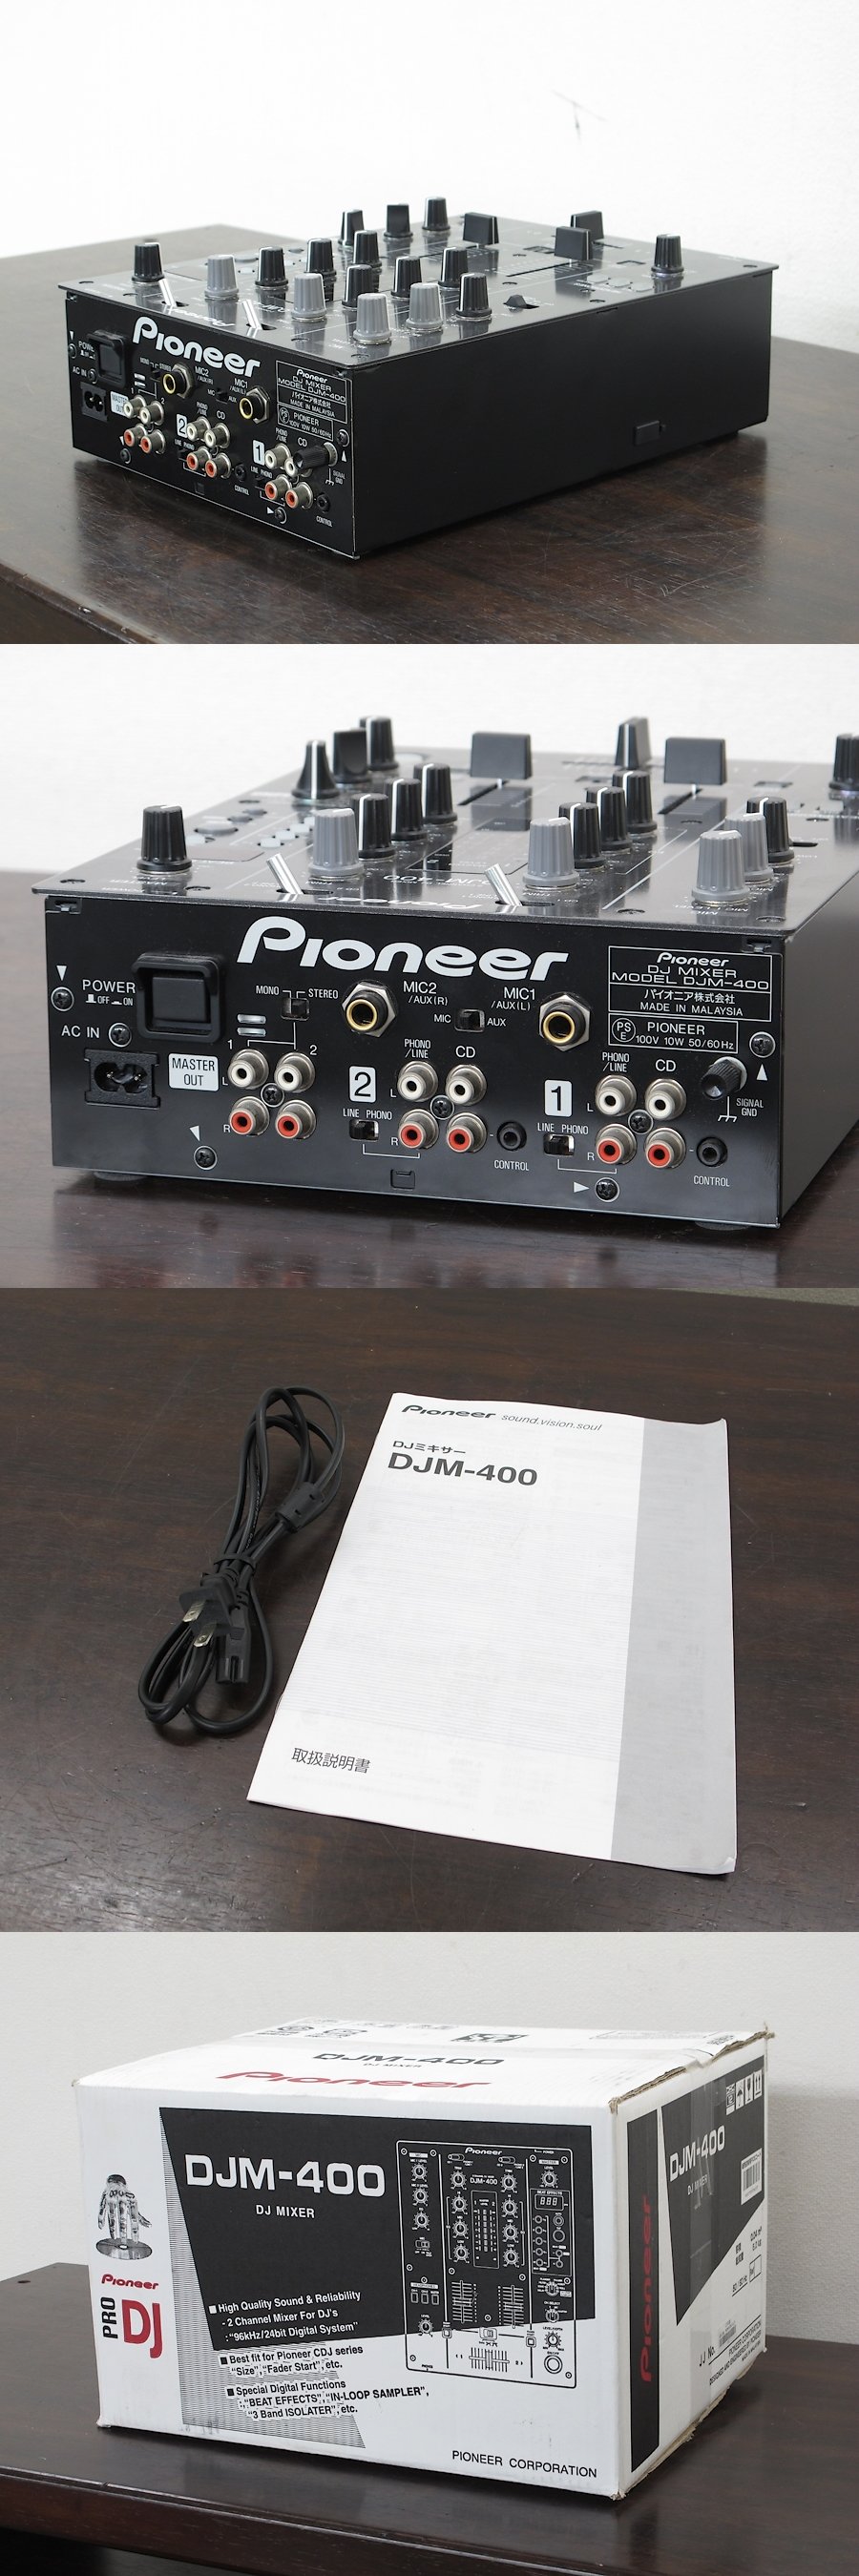 オーディオ機器 その他 パイオニア Pioneer DJM-400 DJミキサー @24505 / 中古オーディオ買取 